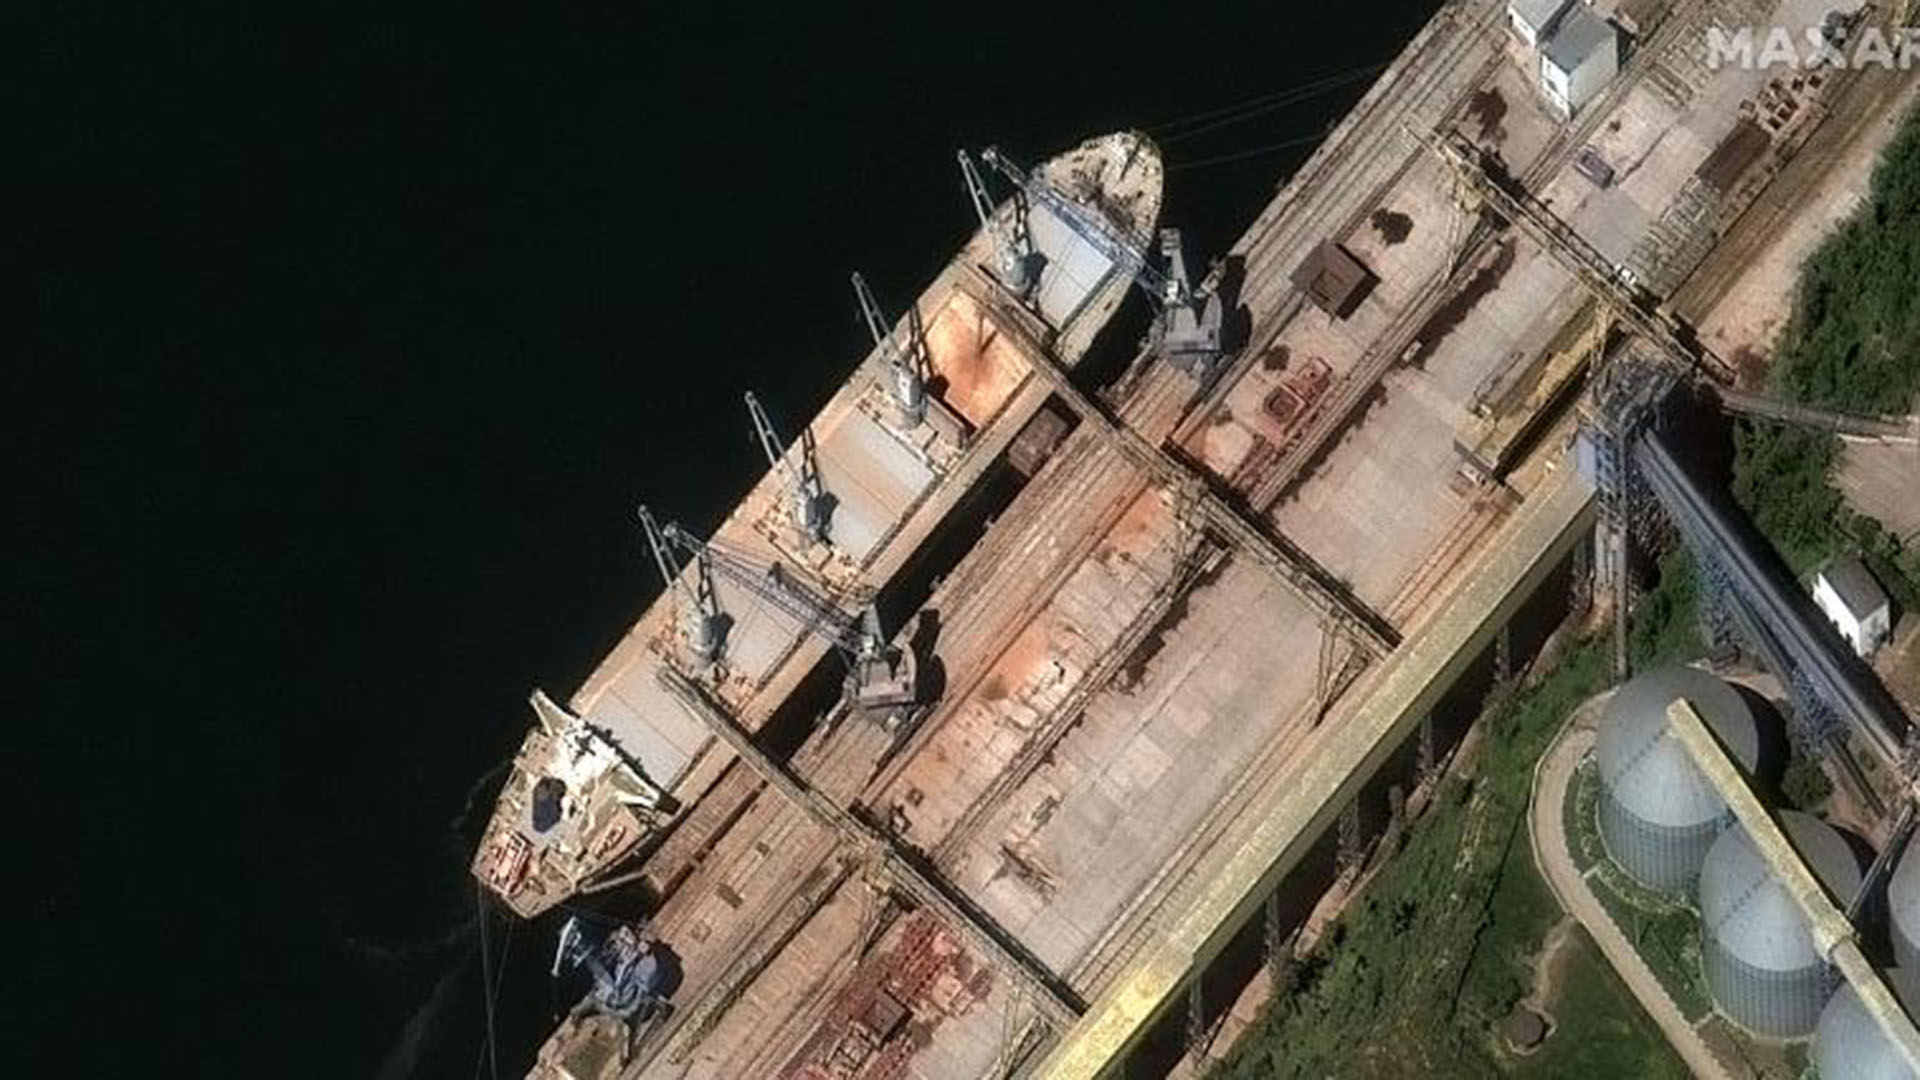 Imágenes satelitales revelan que los rusos estarían cargando en sus barcos tonleadas de grano ucraniano robado